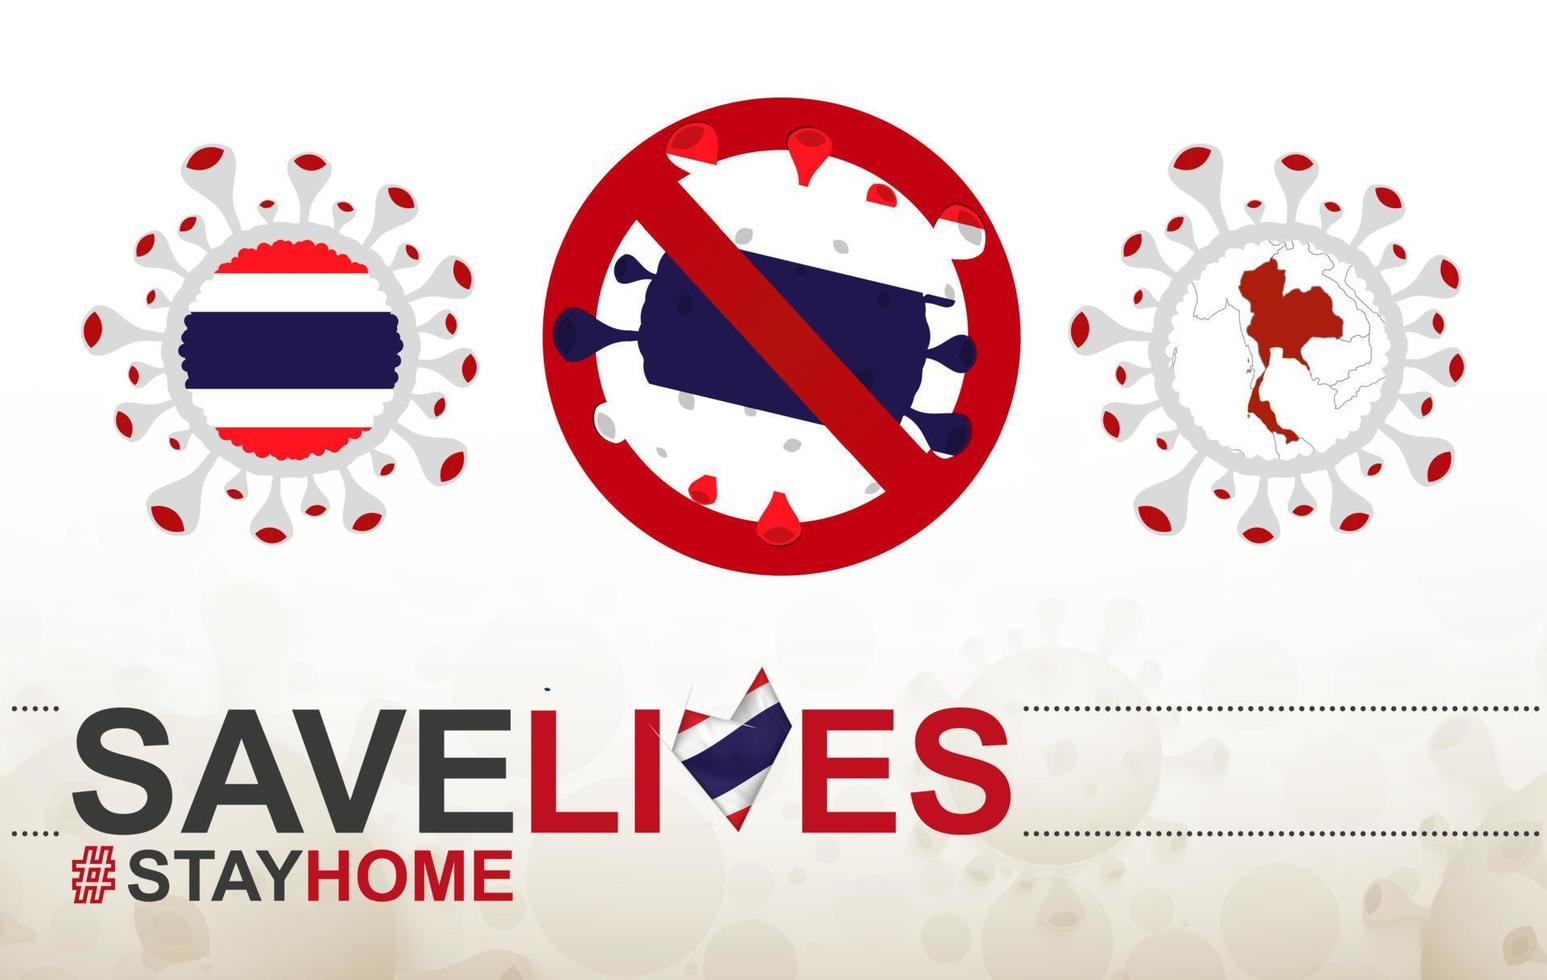 coronavirus cell med thailands flagga och karta. stoppa covid-19 skylt, slogan rädda liv stanna hemma med thailands flagga vektor